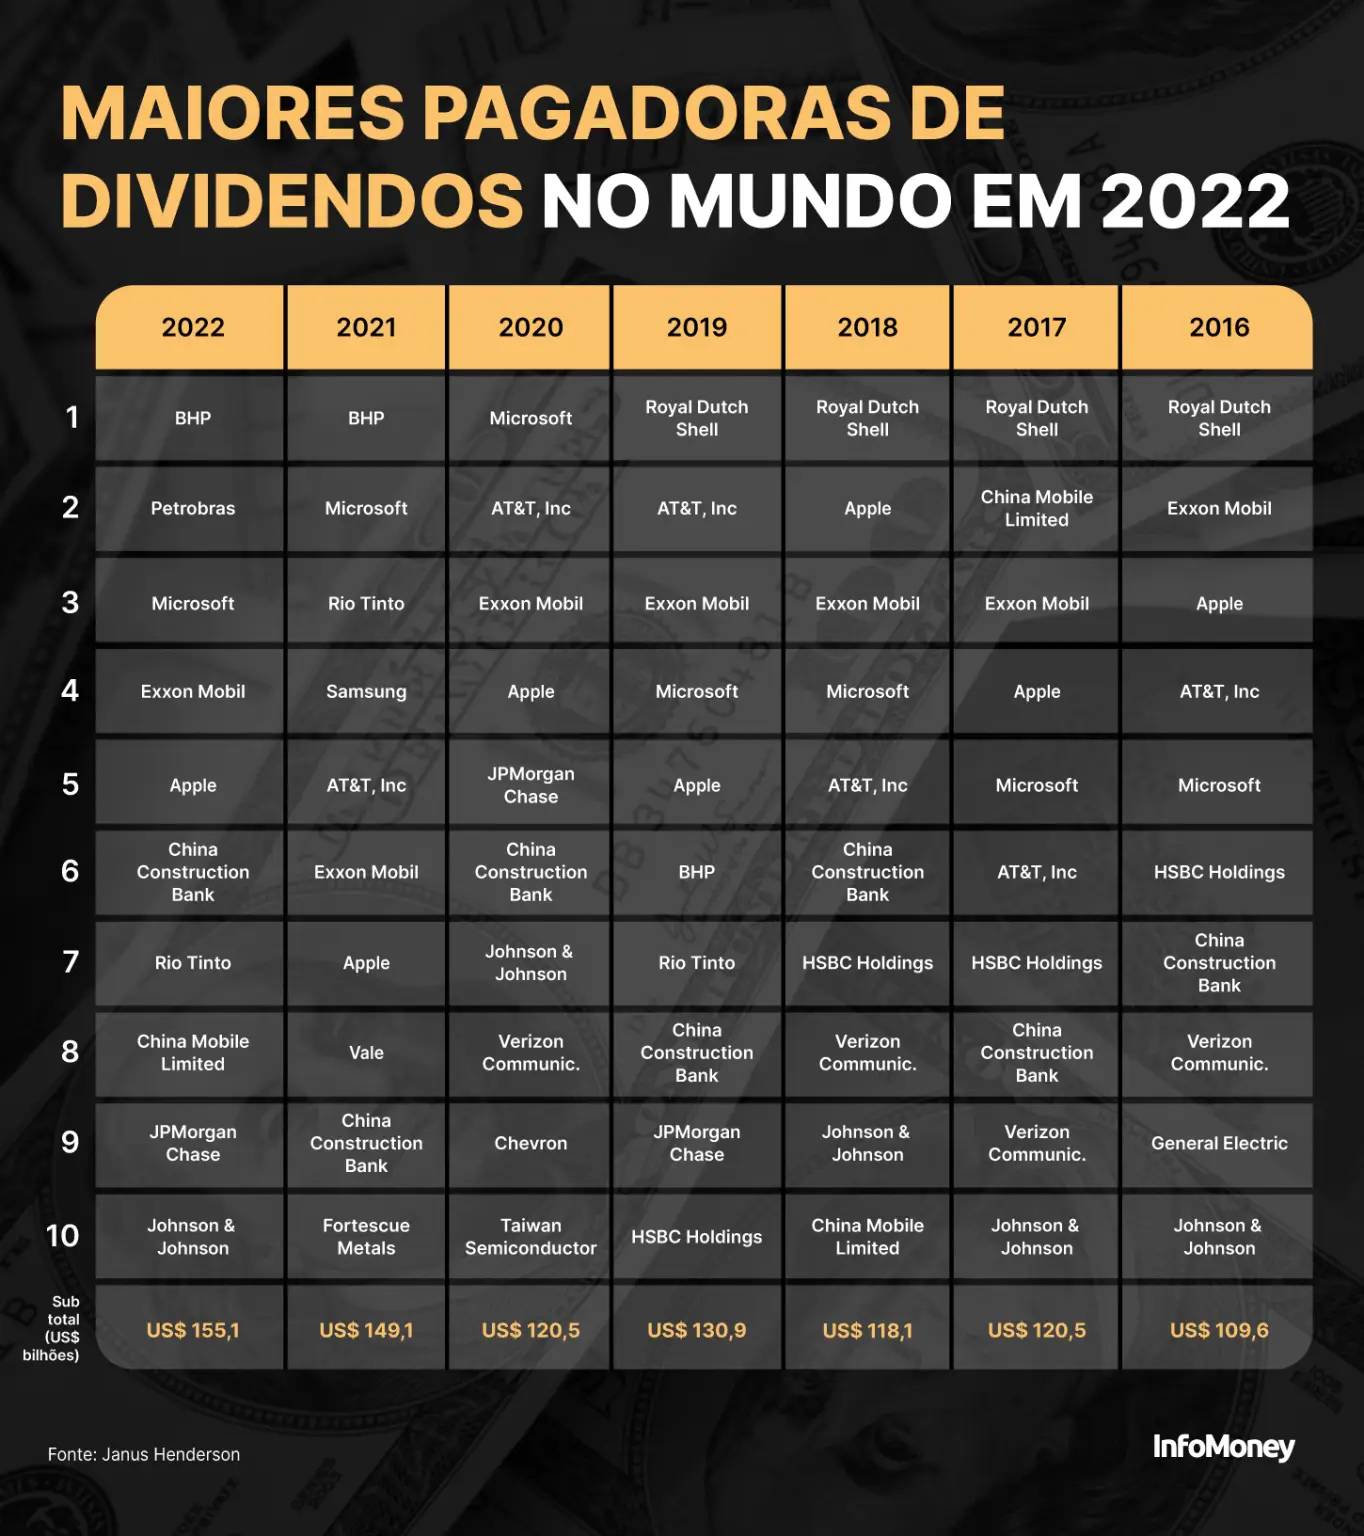 BHP lidera e Petrobras é 2ª maior pagadora de dividendos do mundo em 2022